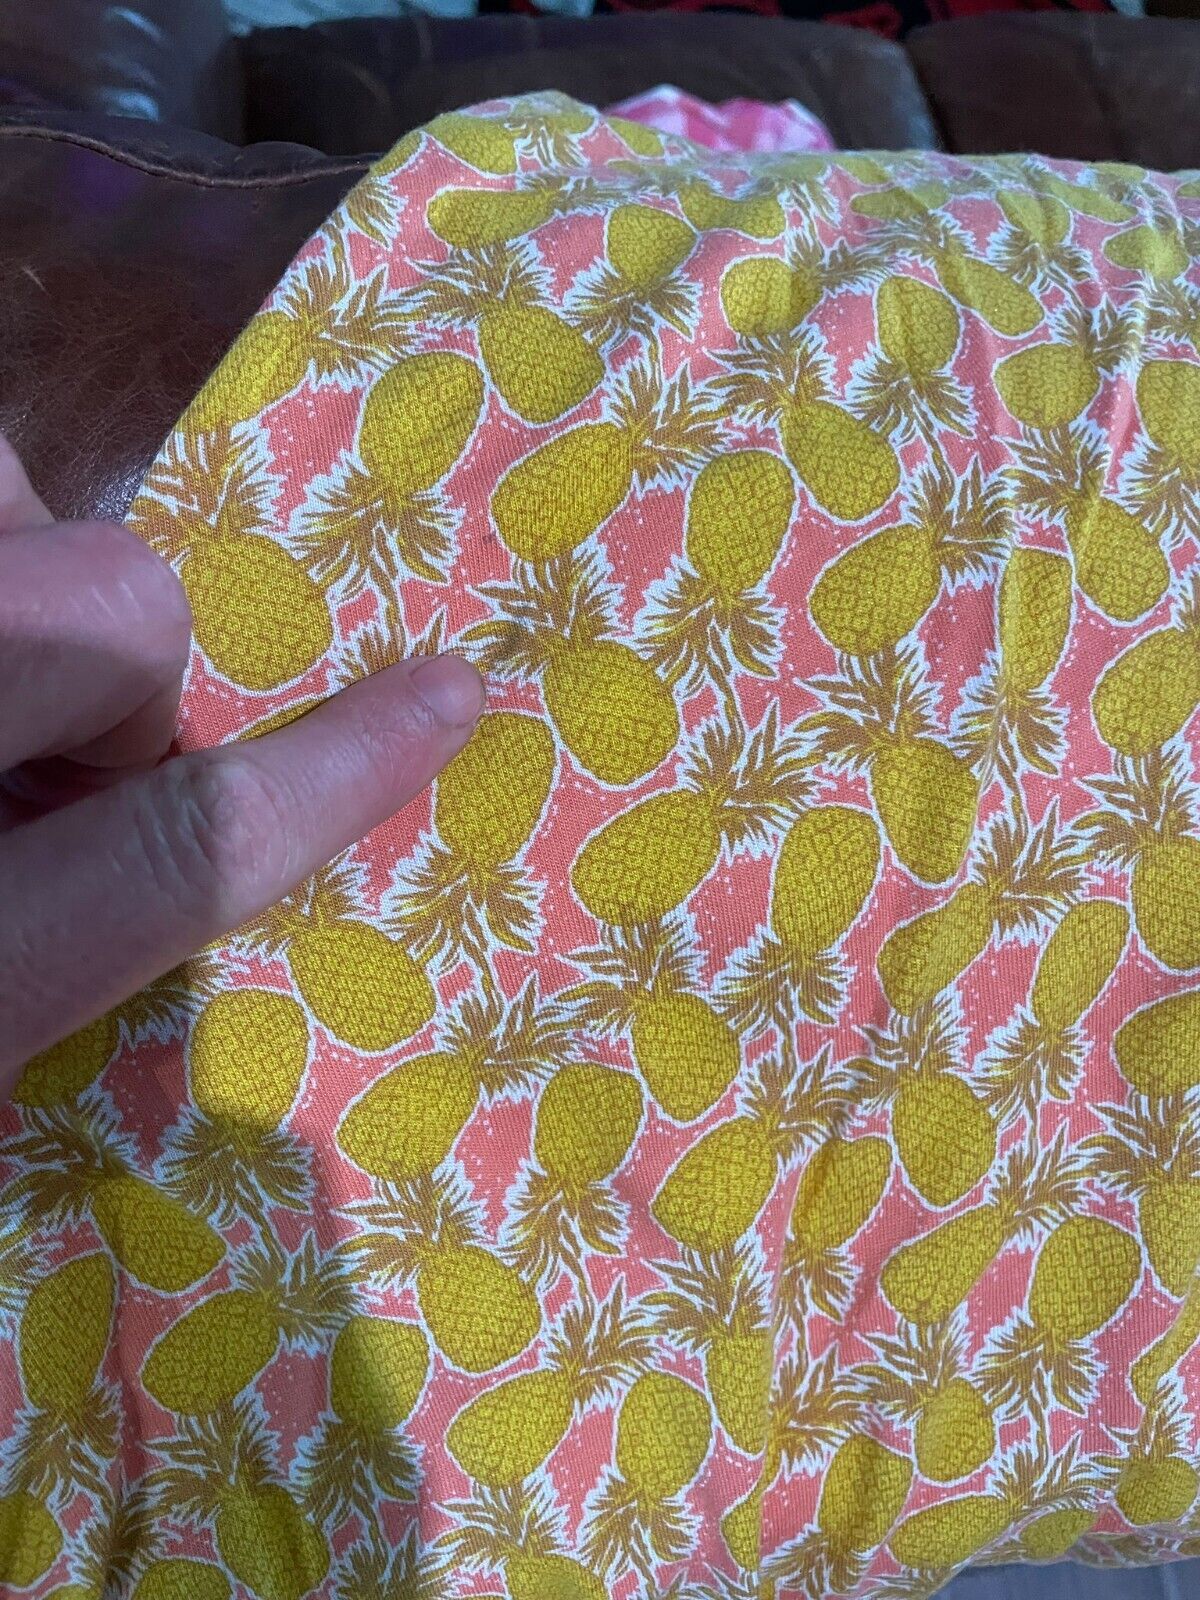 Boden Womens 6 Flippy Jersey Dress Yellow Pineapple Print Button Front D0259